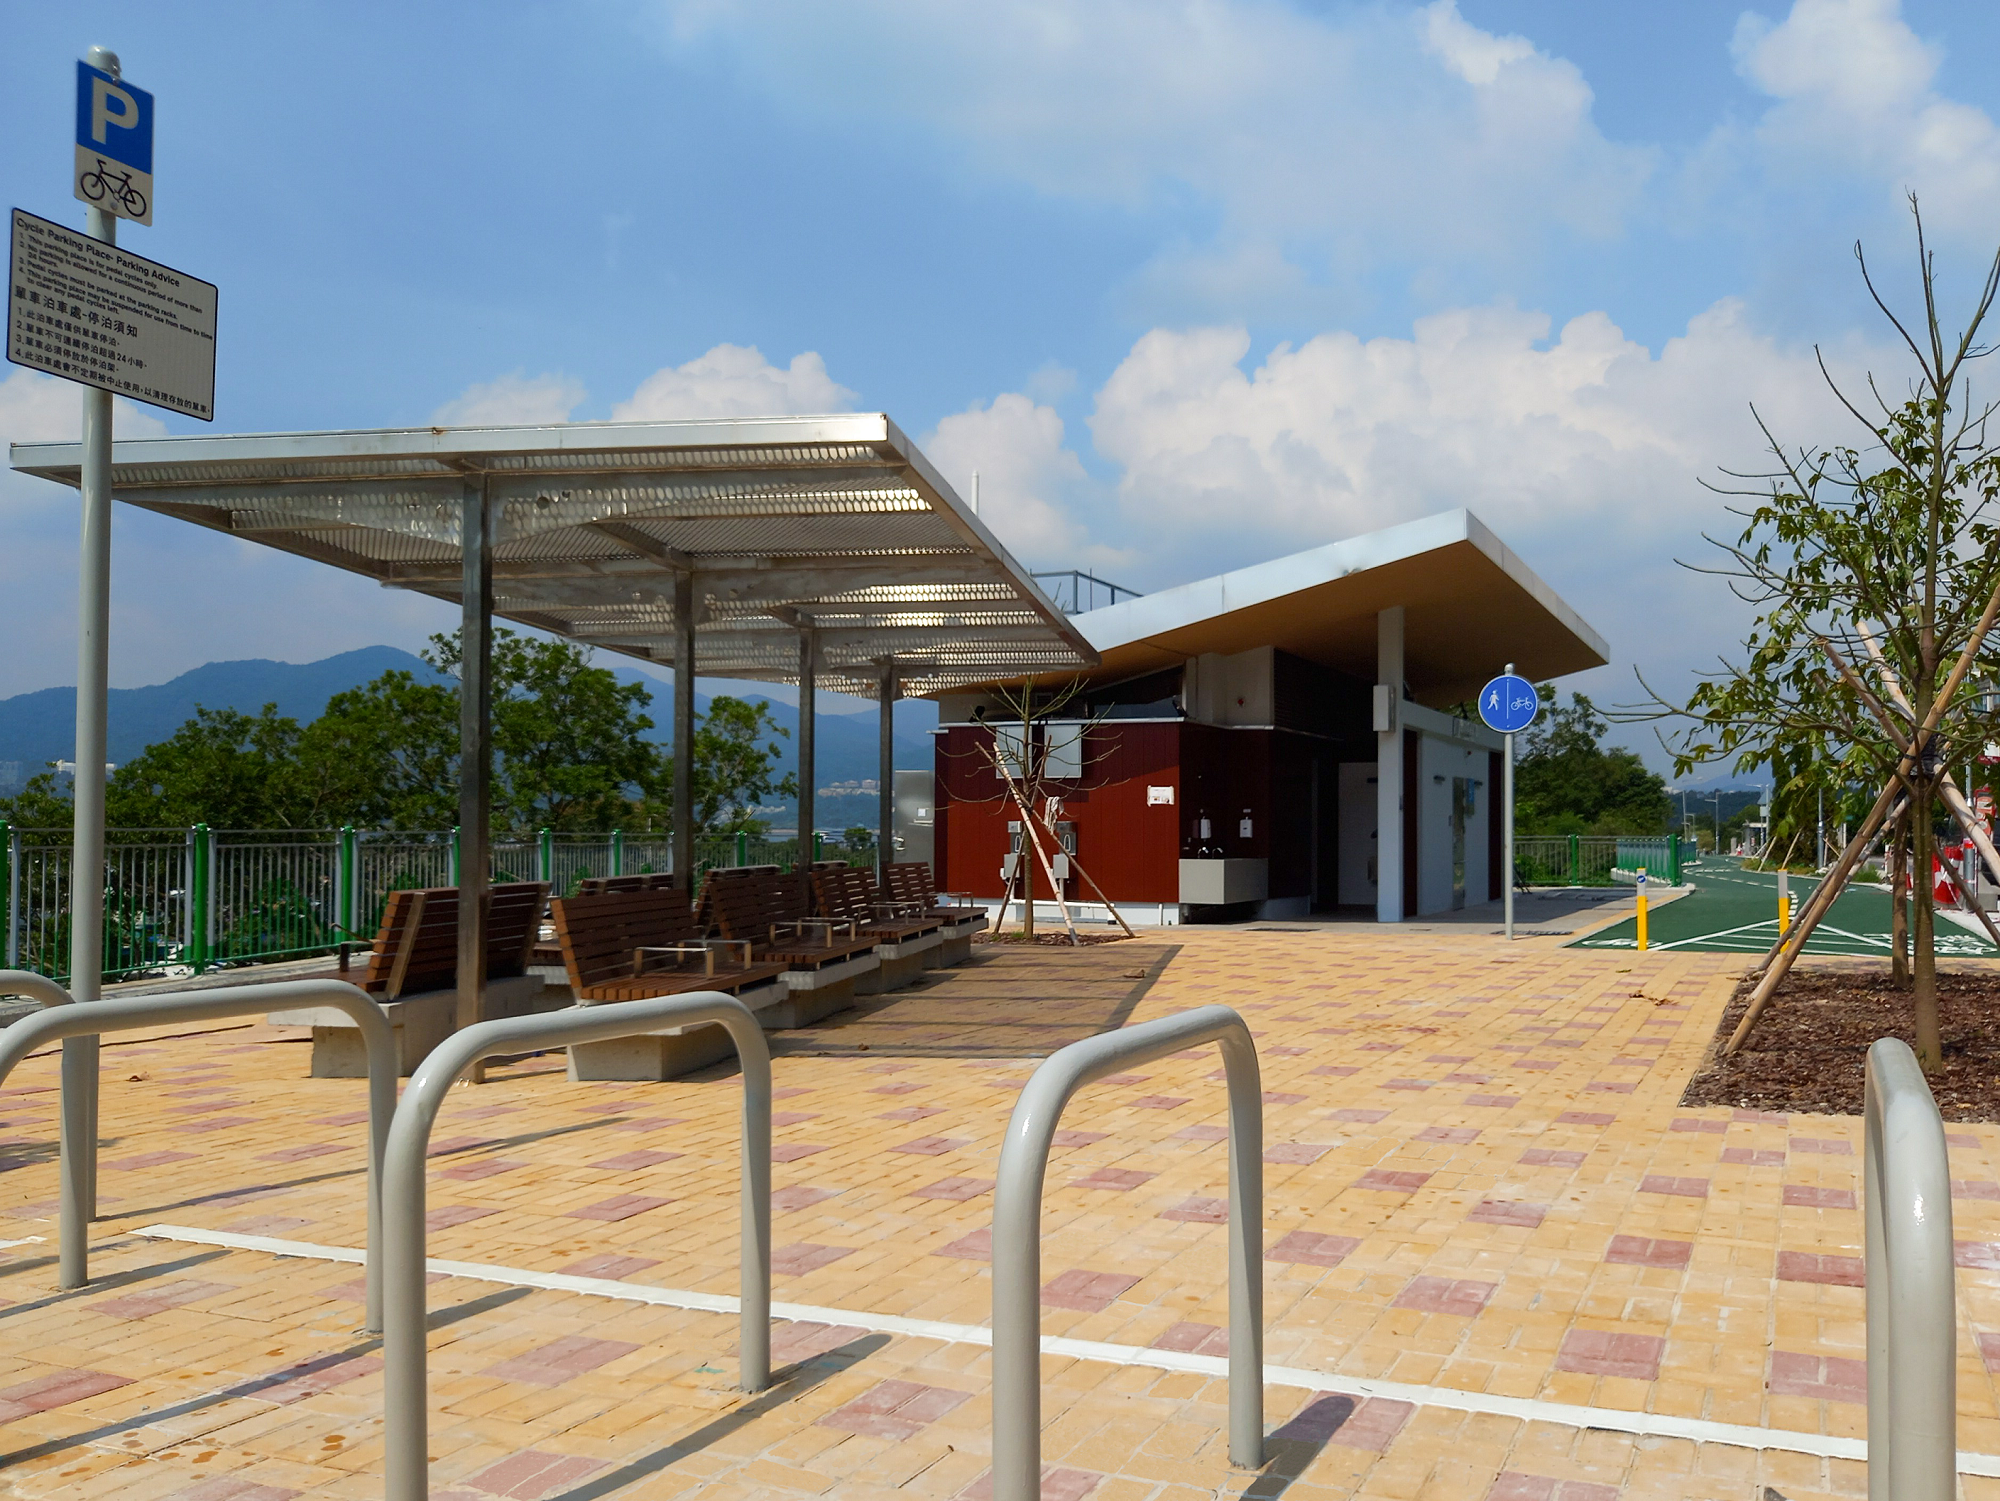 土木工程拓展署今日（七月三十一日）公布，位于大埔的三门仔海滨单车径已经开通。图为单车径尽头的休息处，提供配套设施，方便市民休憩和游览附近景点。